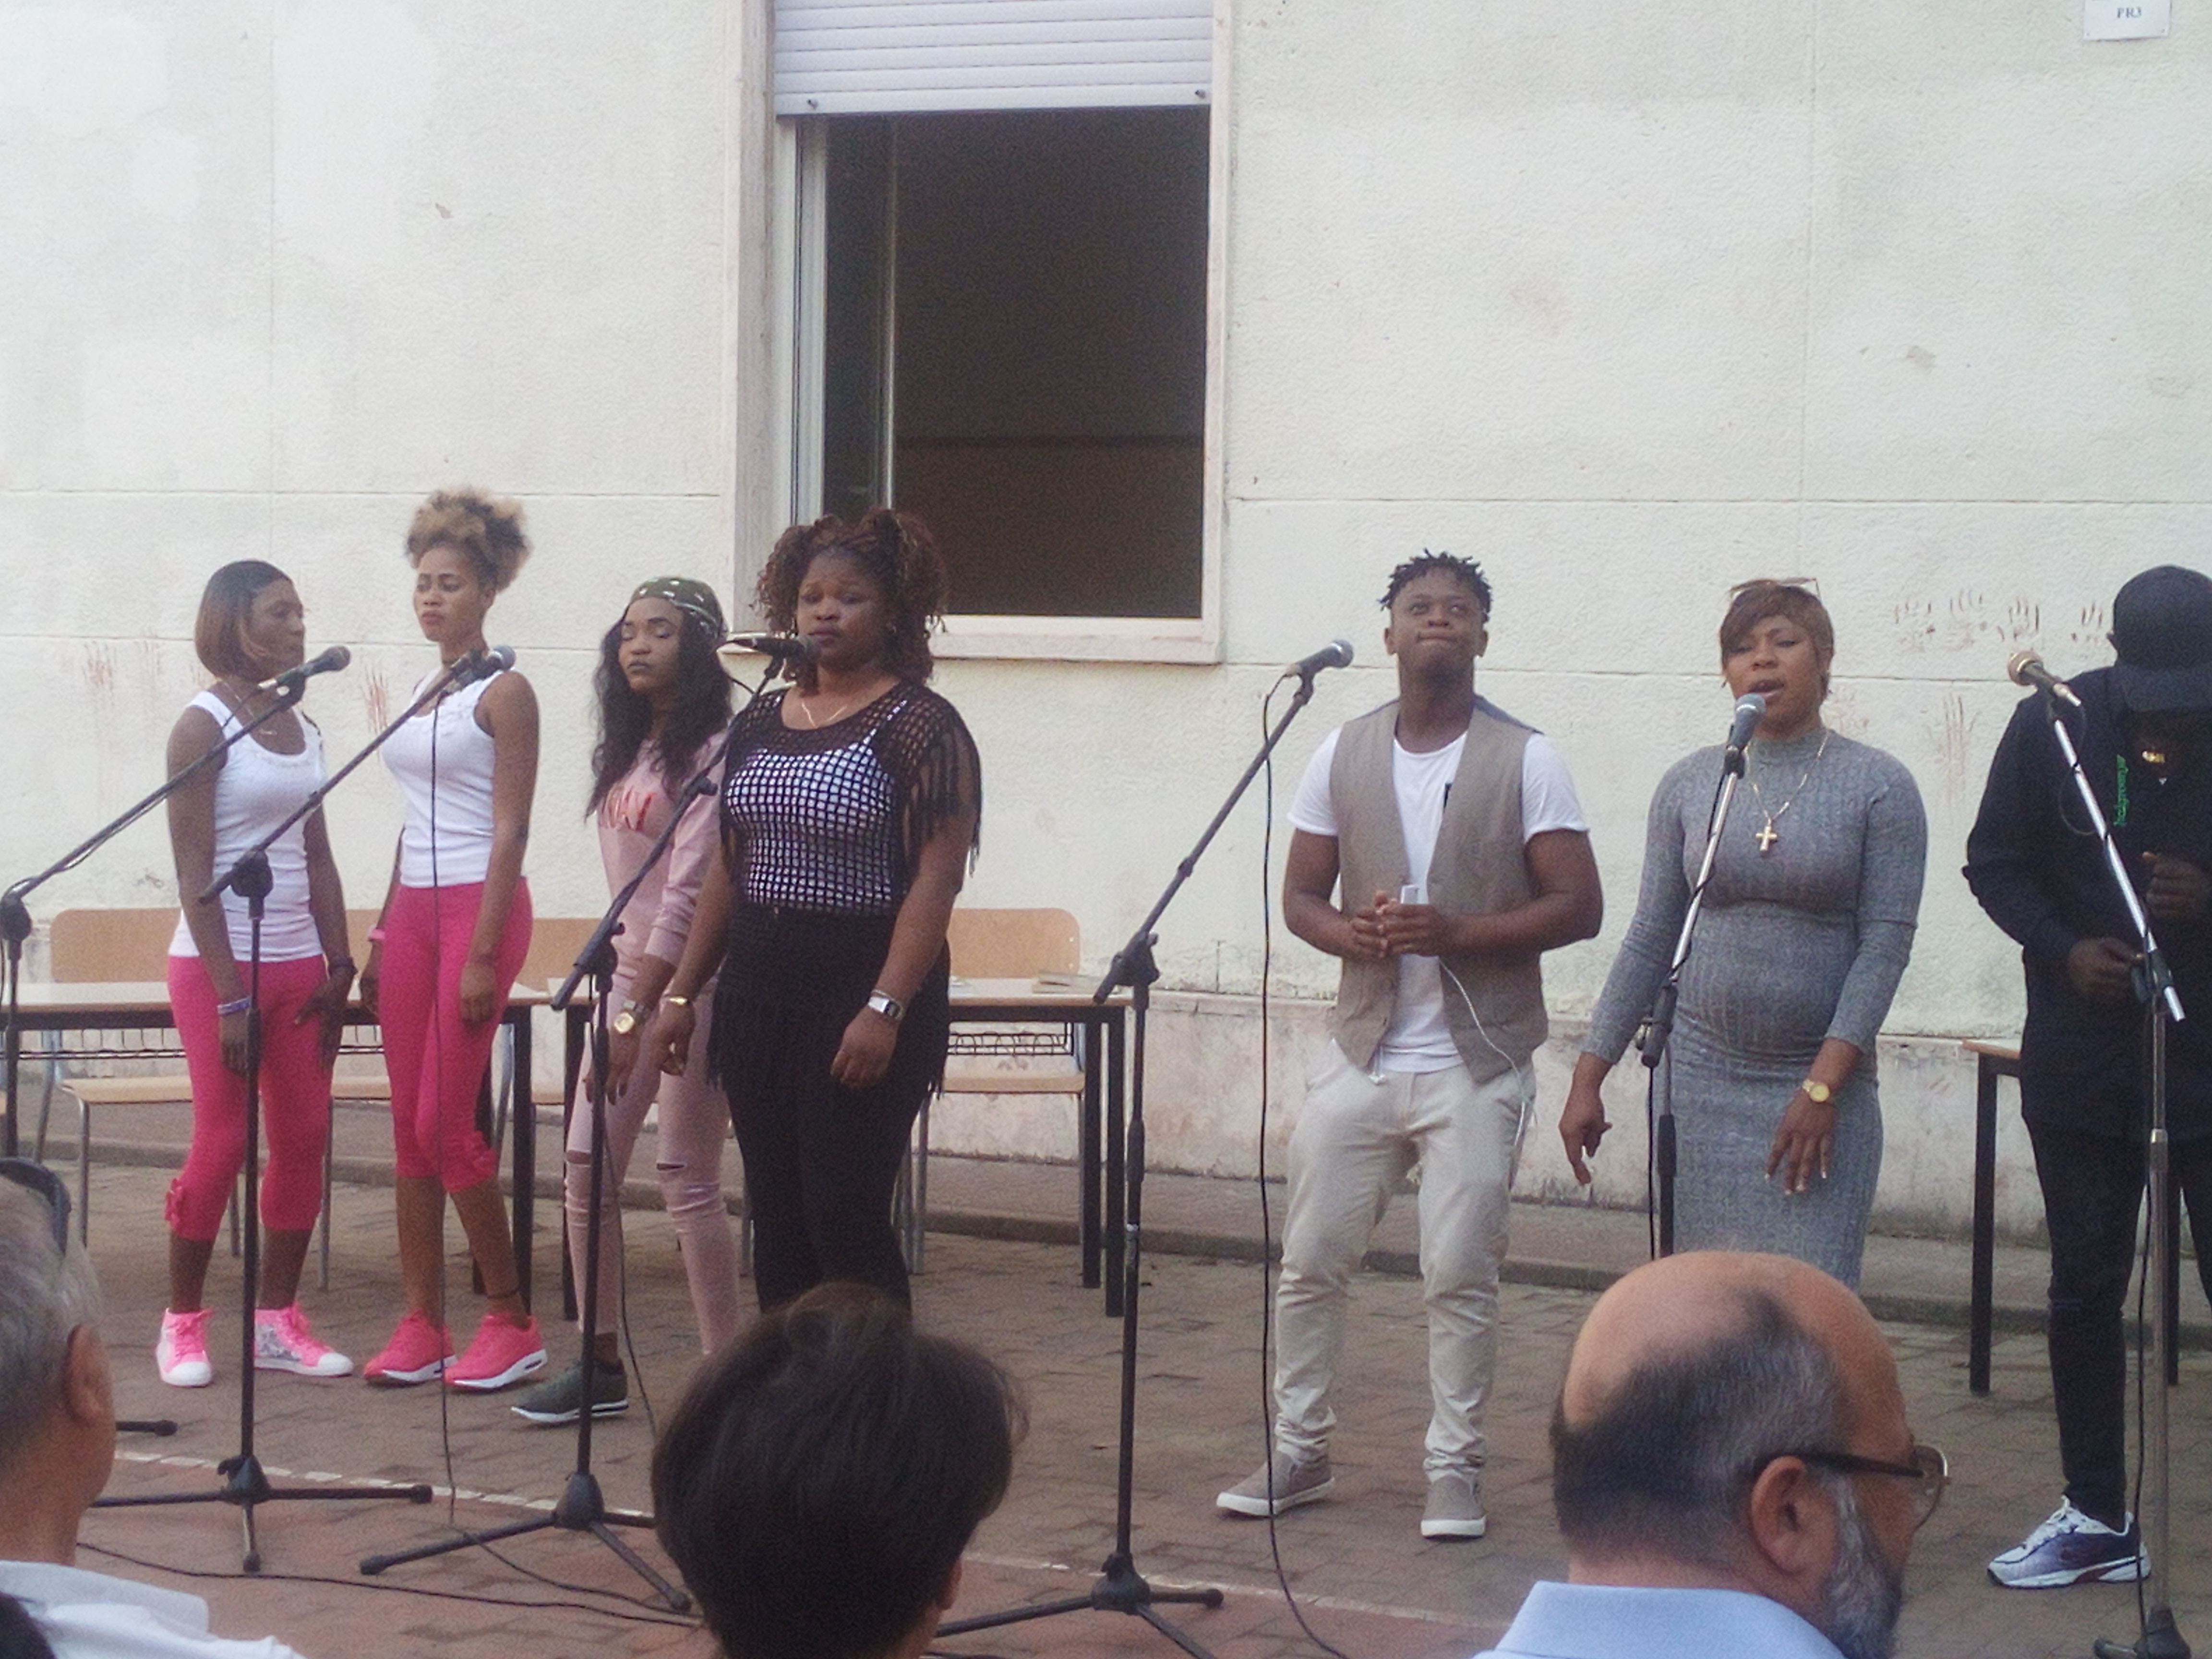 Beneficiari SPRAR Itri mentre cantano alla festa del CIPIA Formia